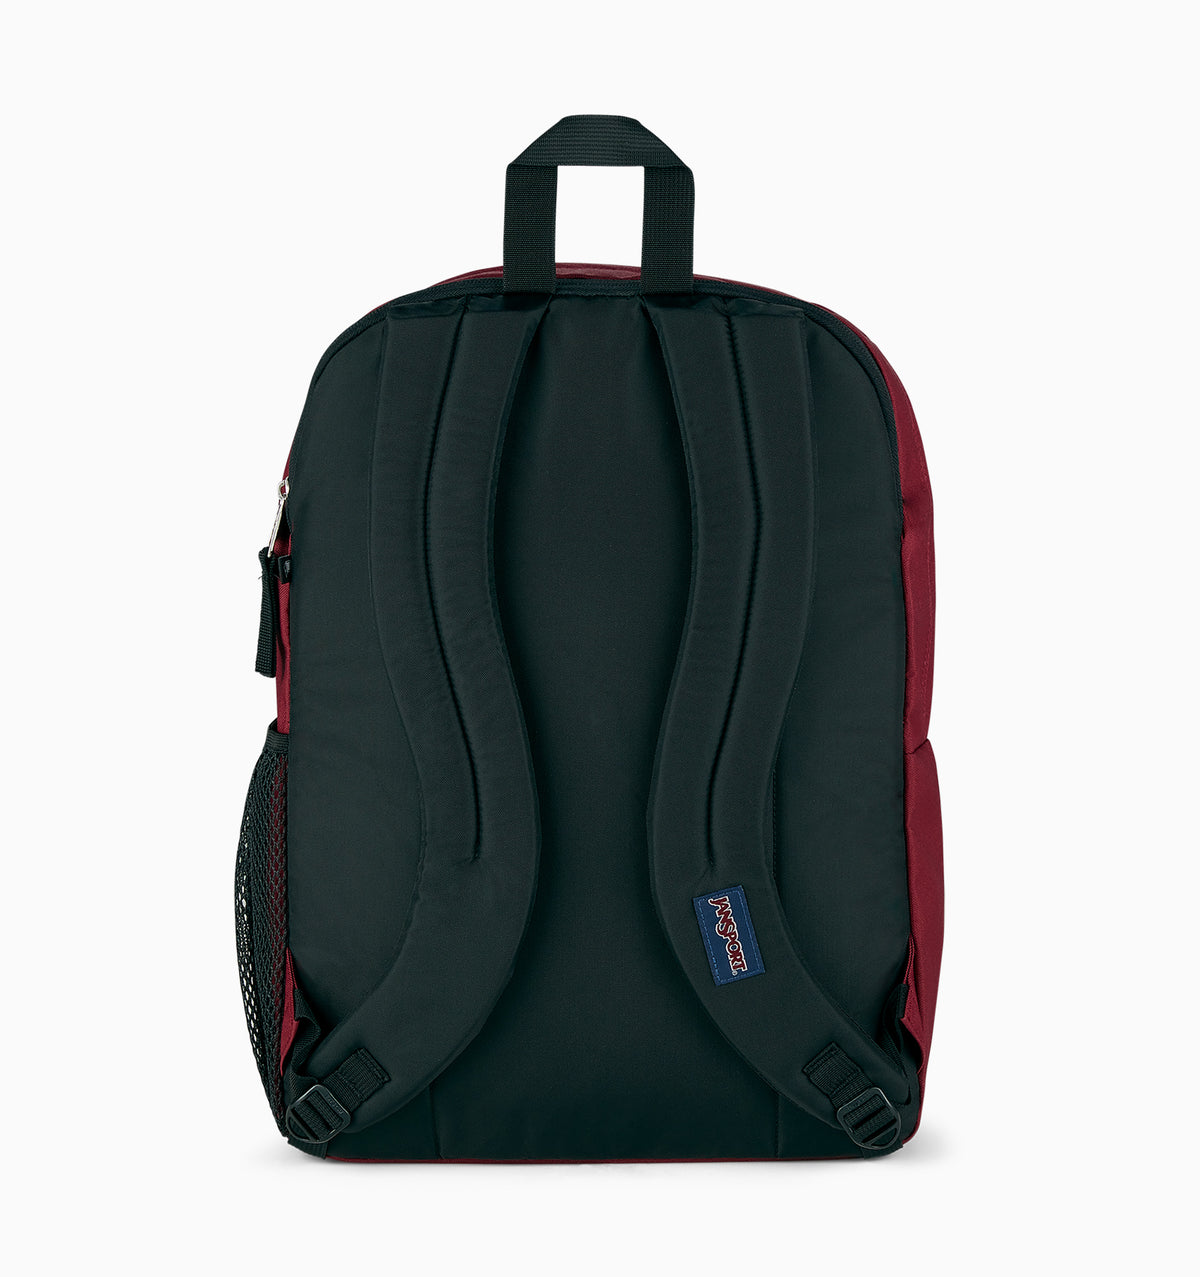 JanSport 16" Big Student Laptop Backpack 34L - Russet Red